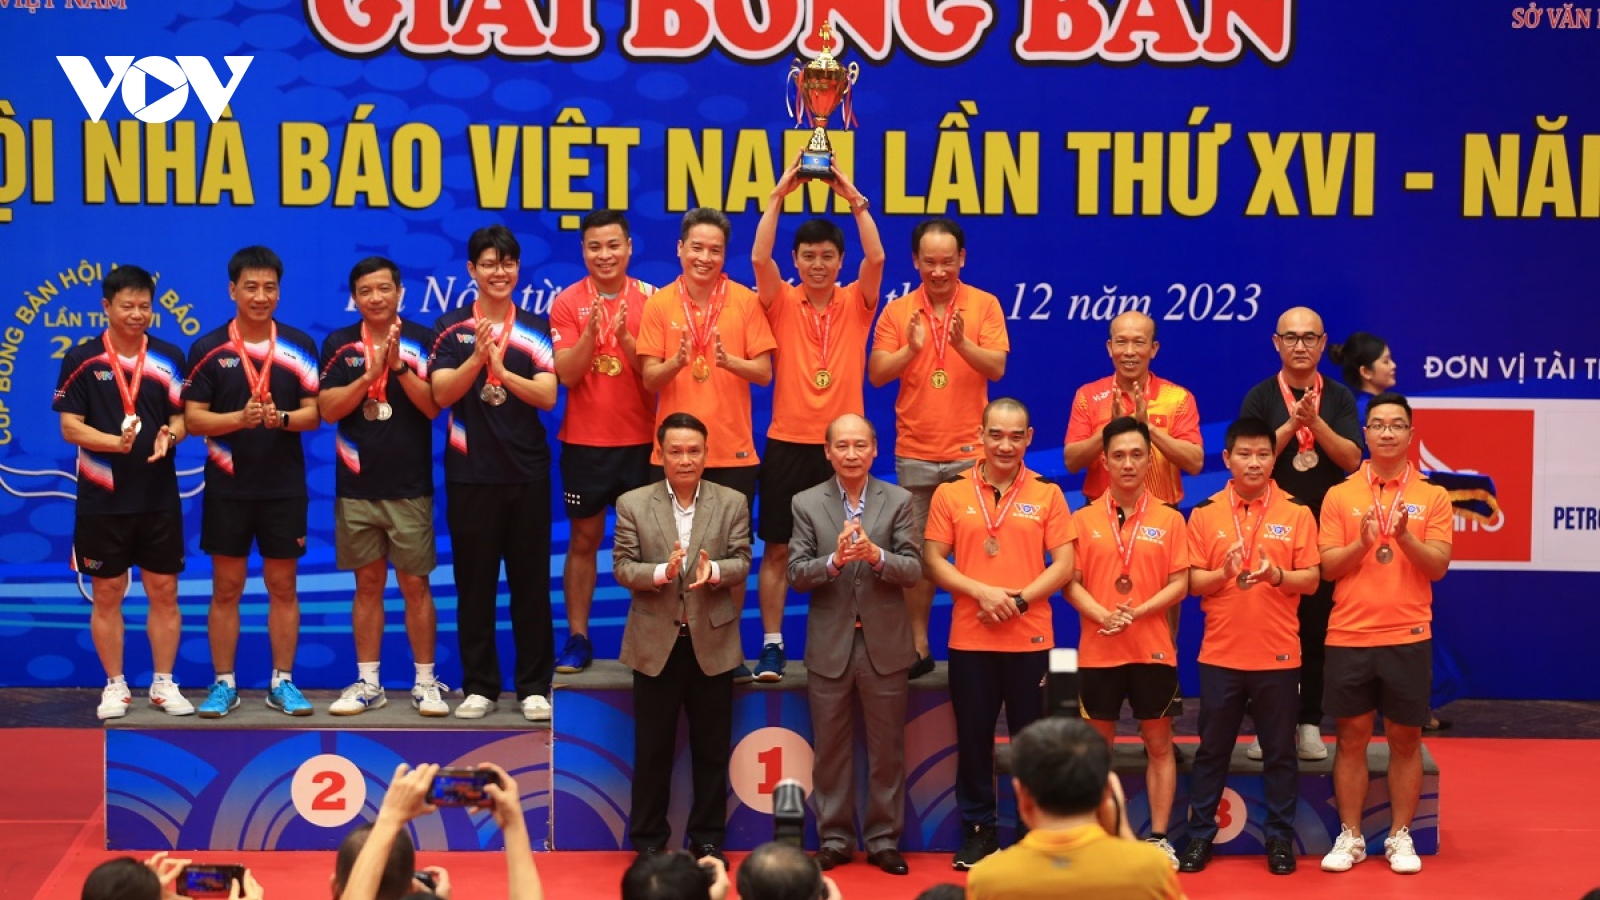 Bế mạc Giải Bóng bàn Cúp Hội Nhà báo Việt Nam lần thứ XVI - năm 2023